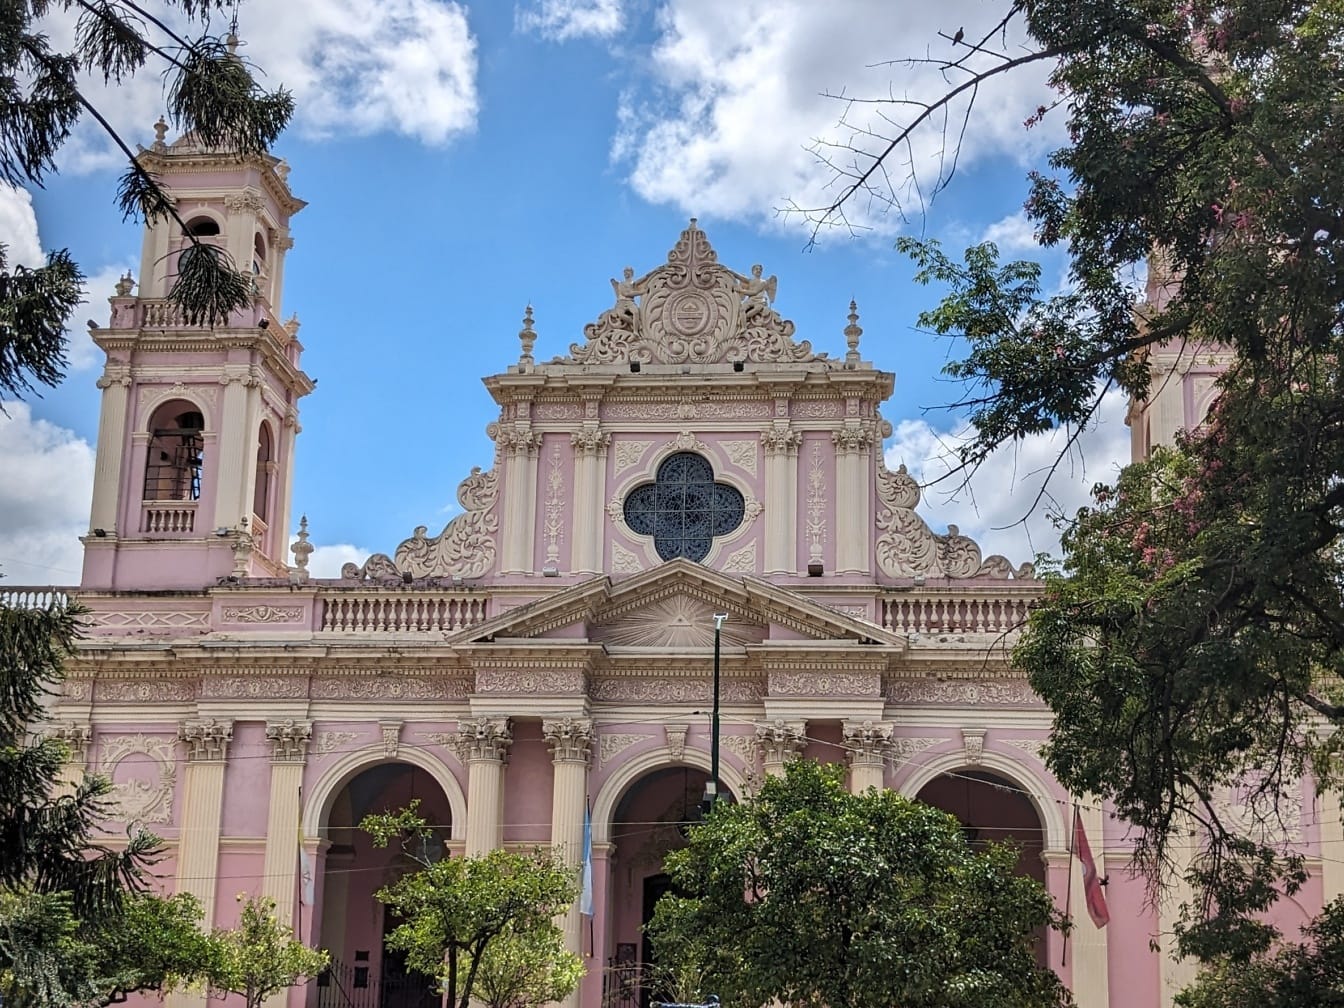 Catedrala Salta din parcul orașului, în piața numită Piața 9 iulie din Argentina